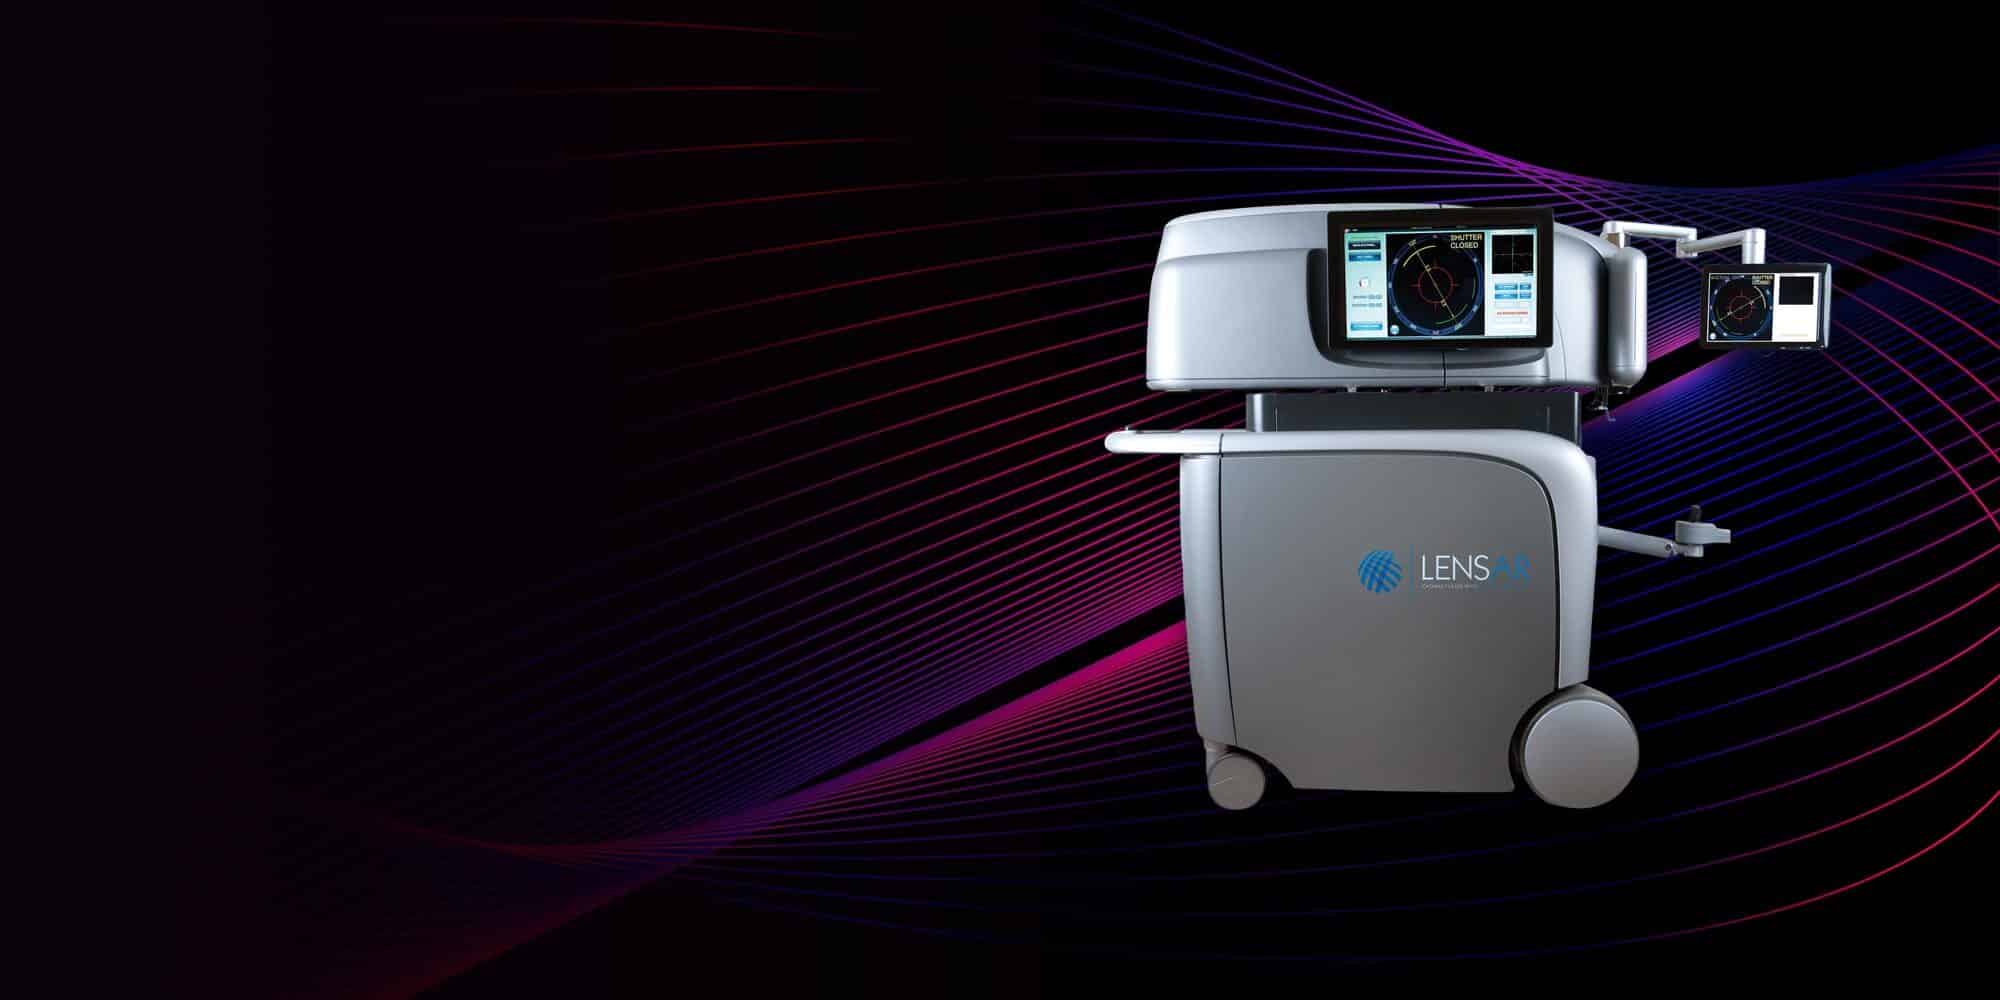 The Lensar Laser System